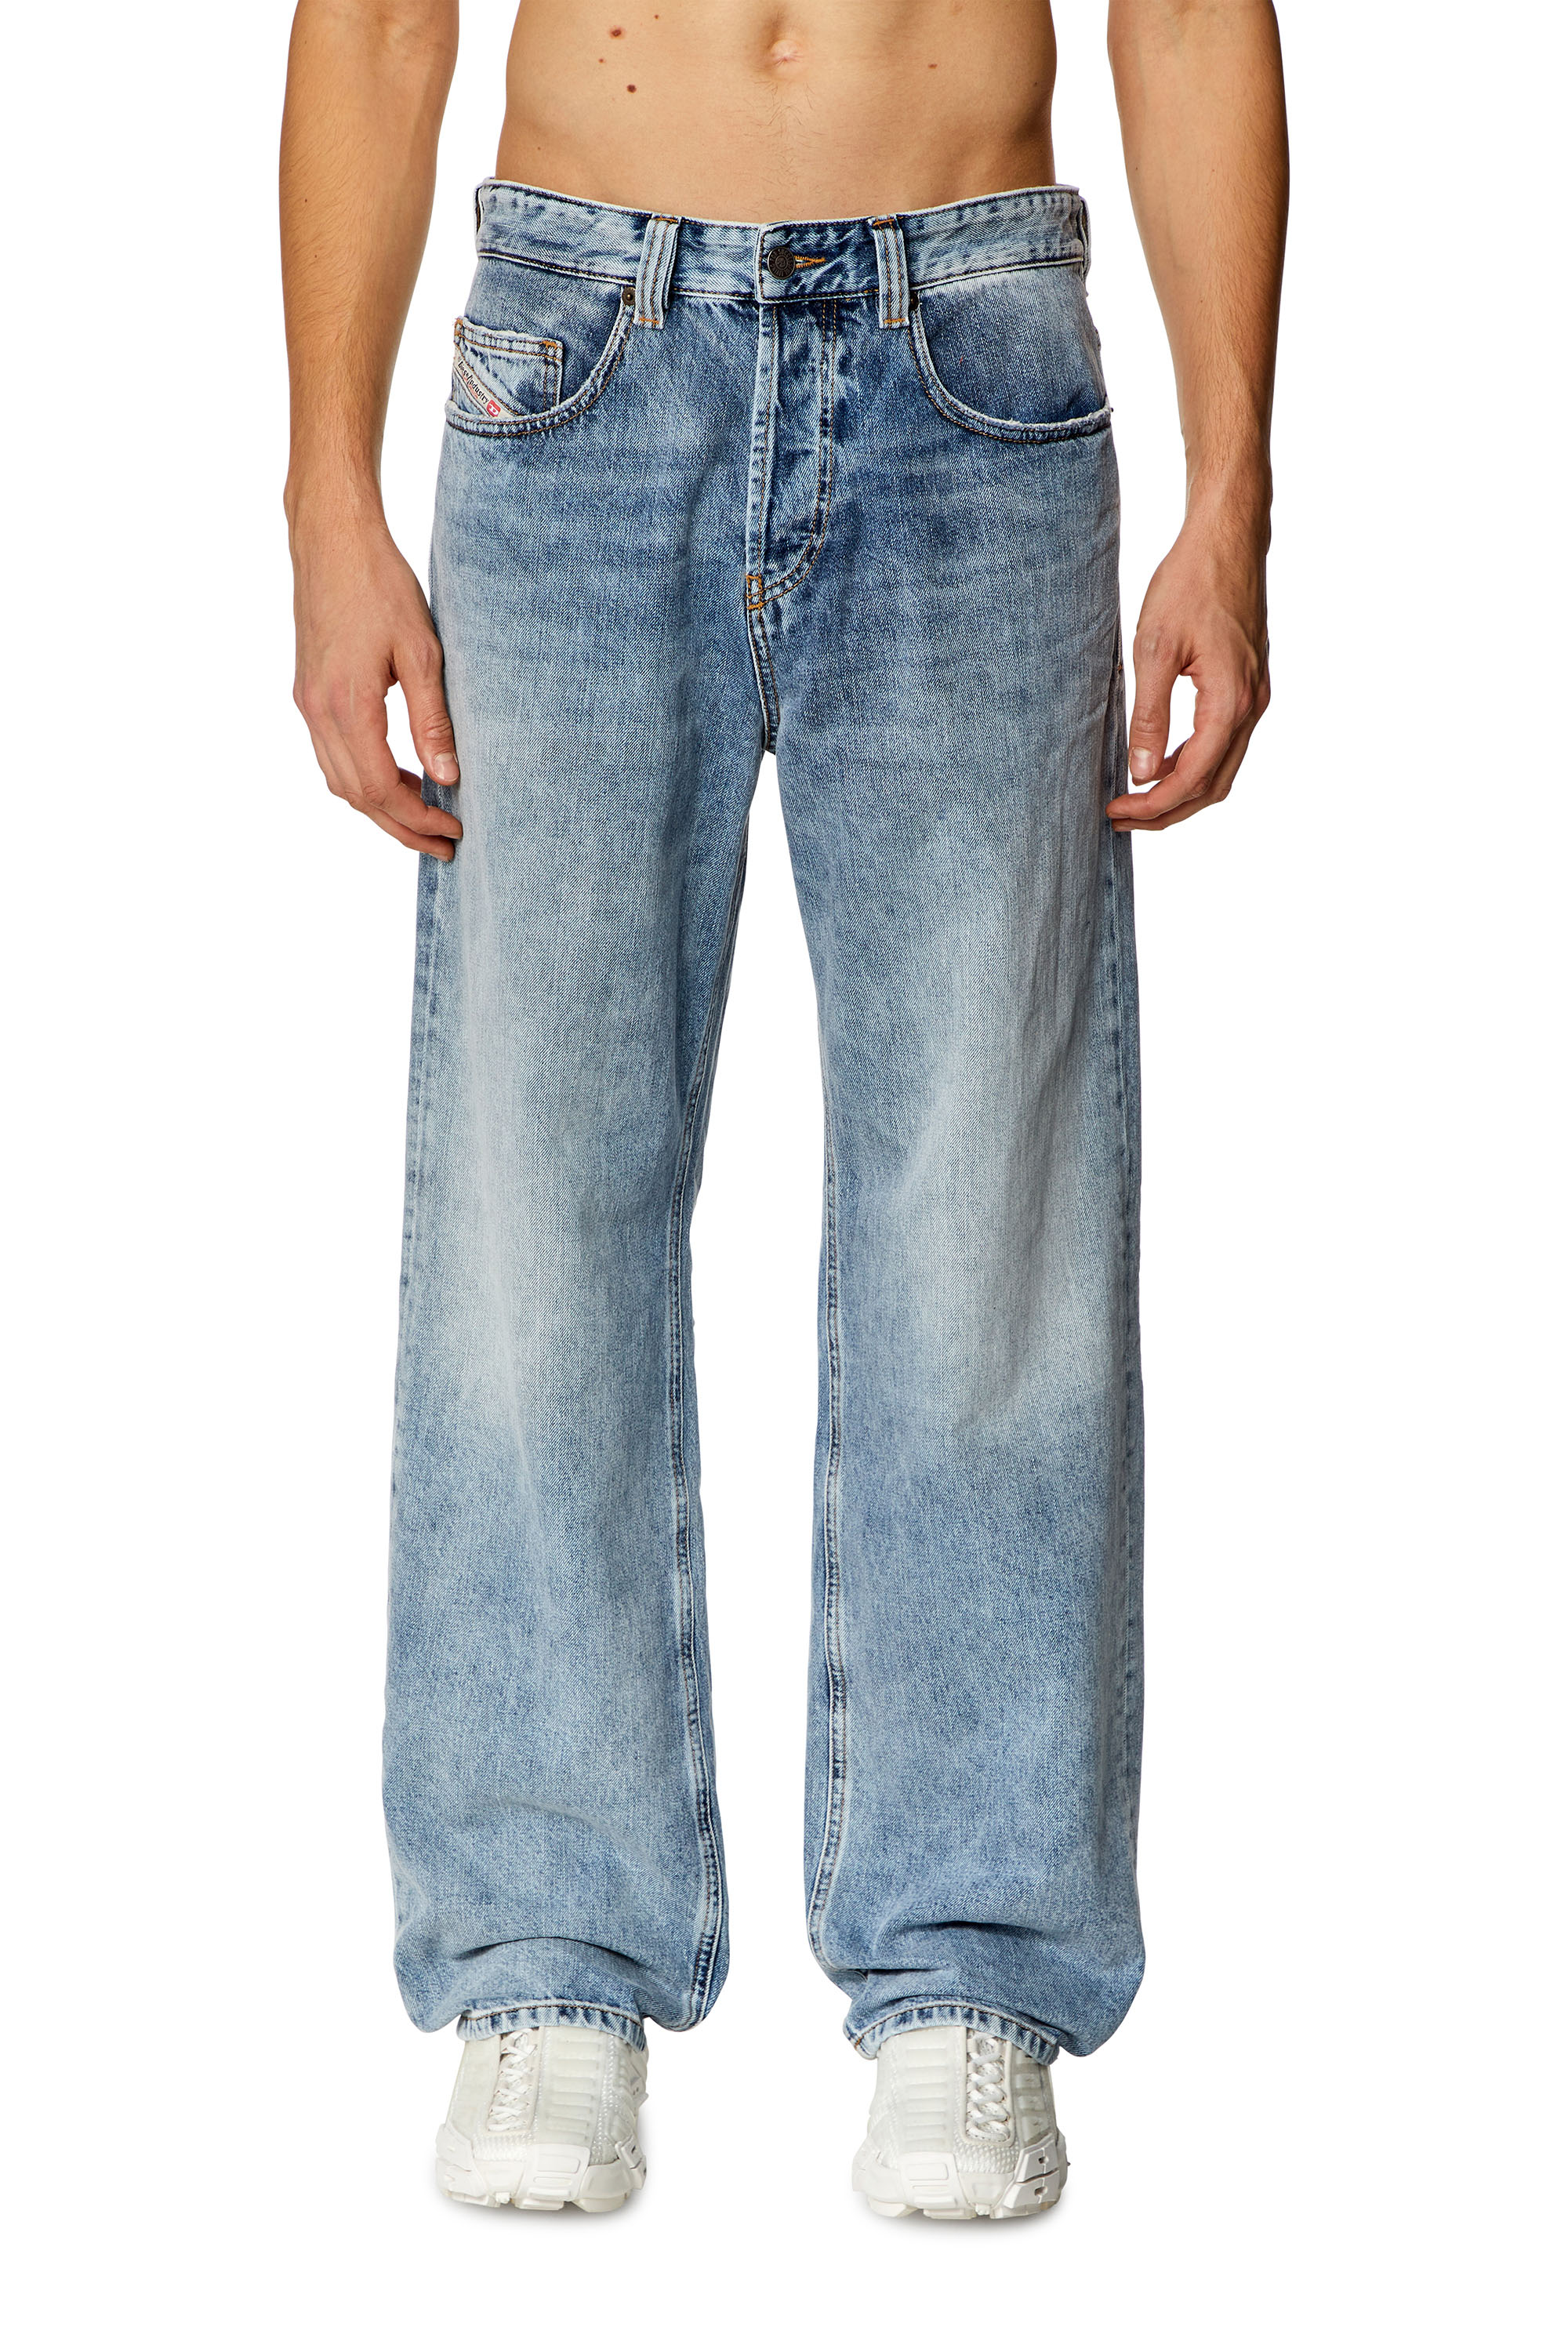 Fit Denim Jeans New Straight Denim Cargo Pants Biker Jeans Men Baggy Loose  Blue Jeans with Side Pockets Jeans Men, Blue, 30 : : Everything  Else